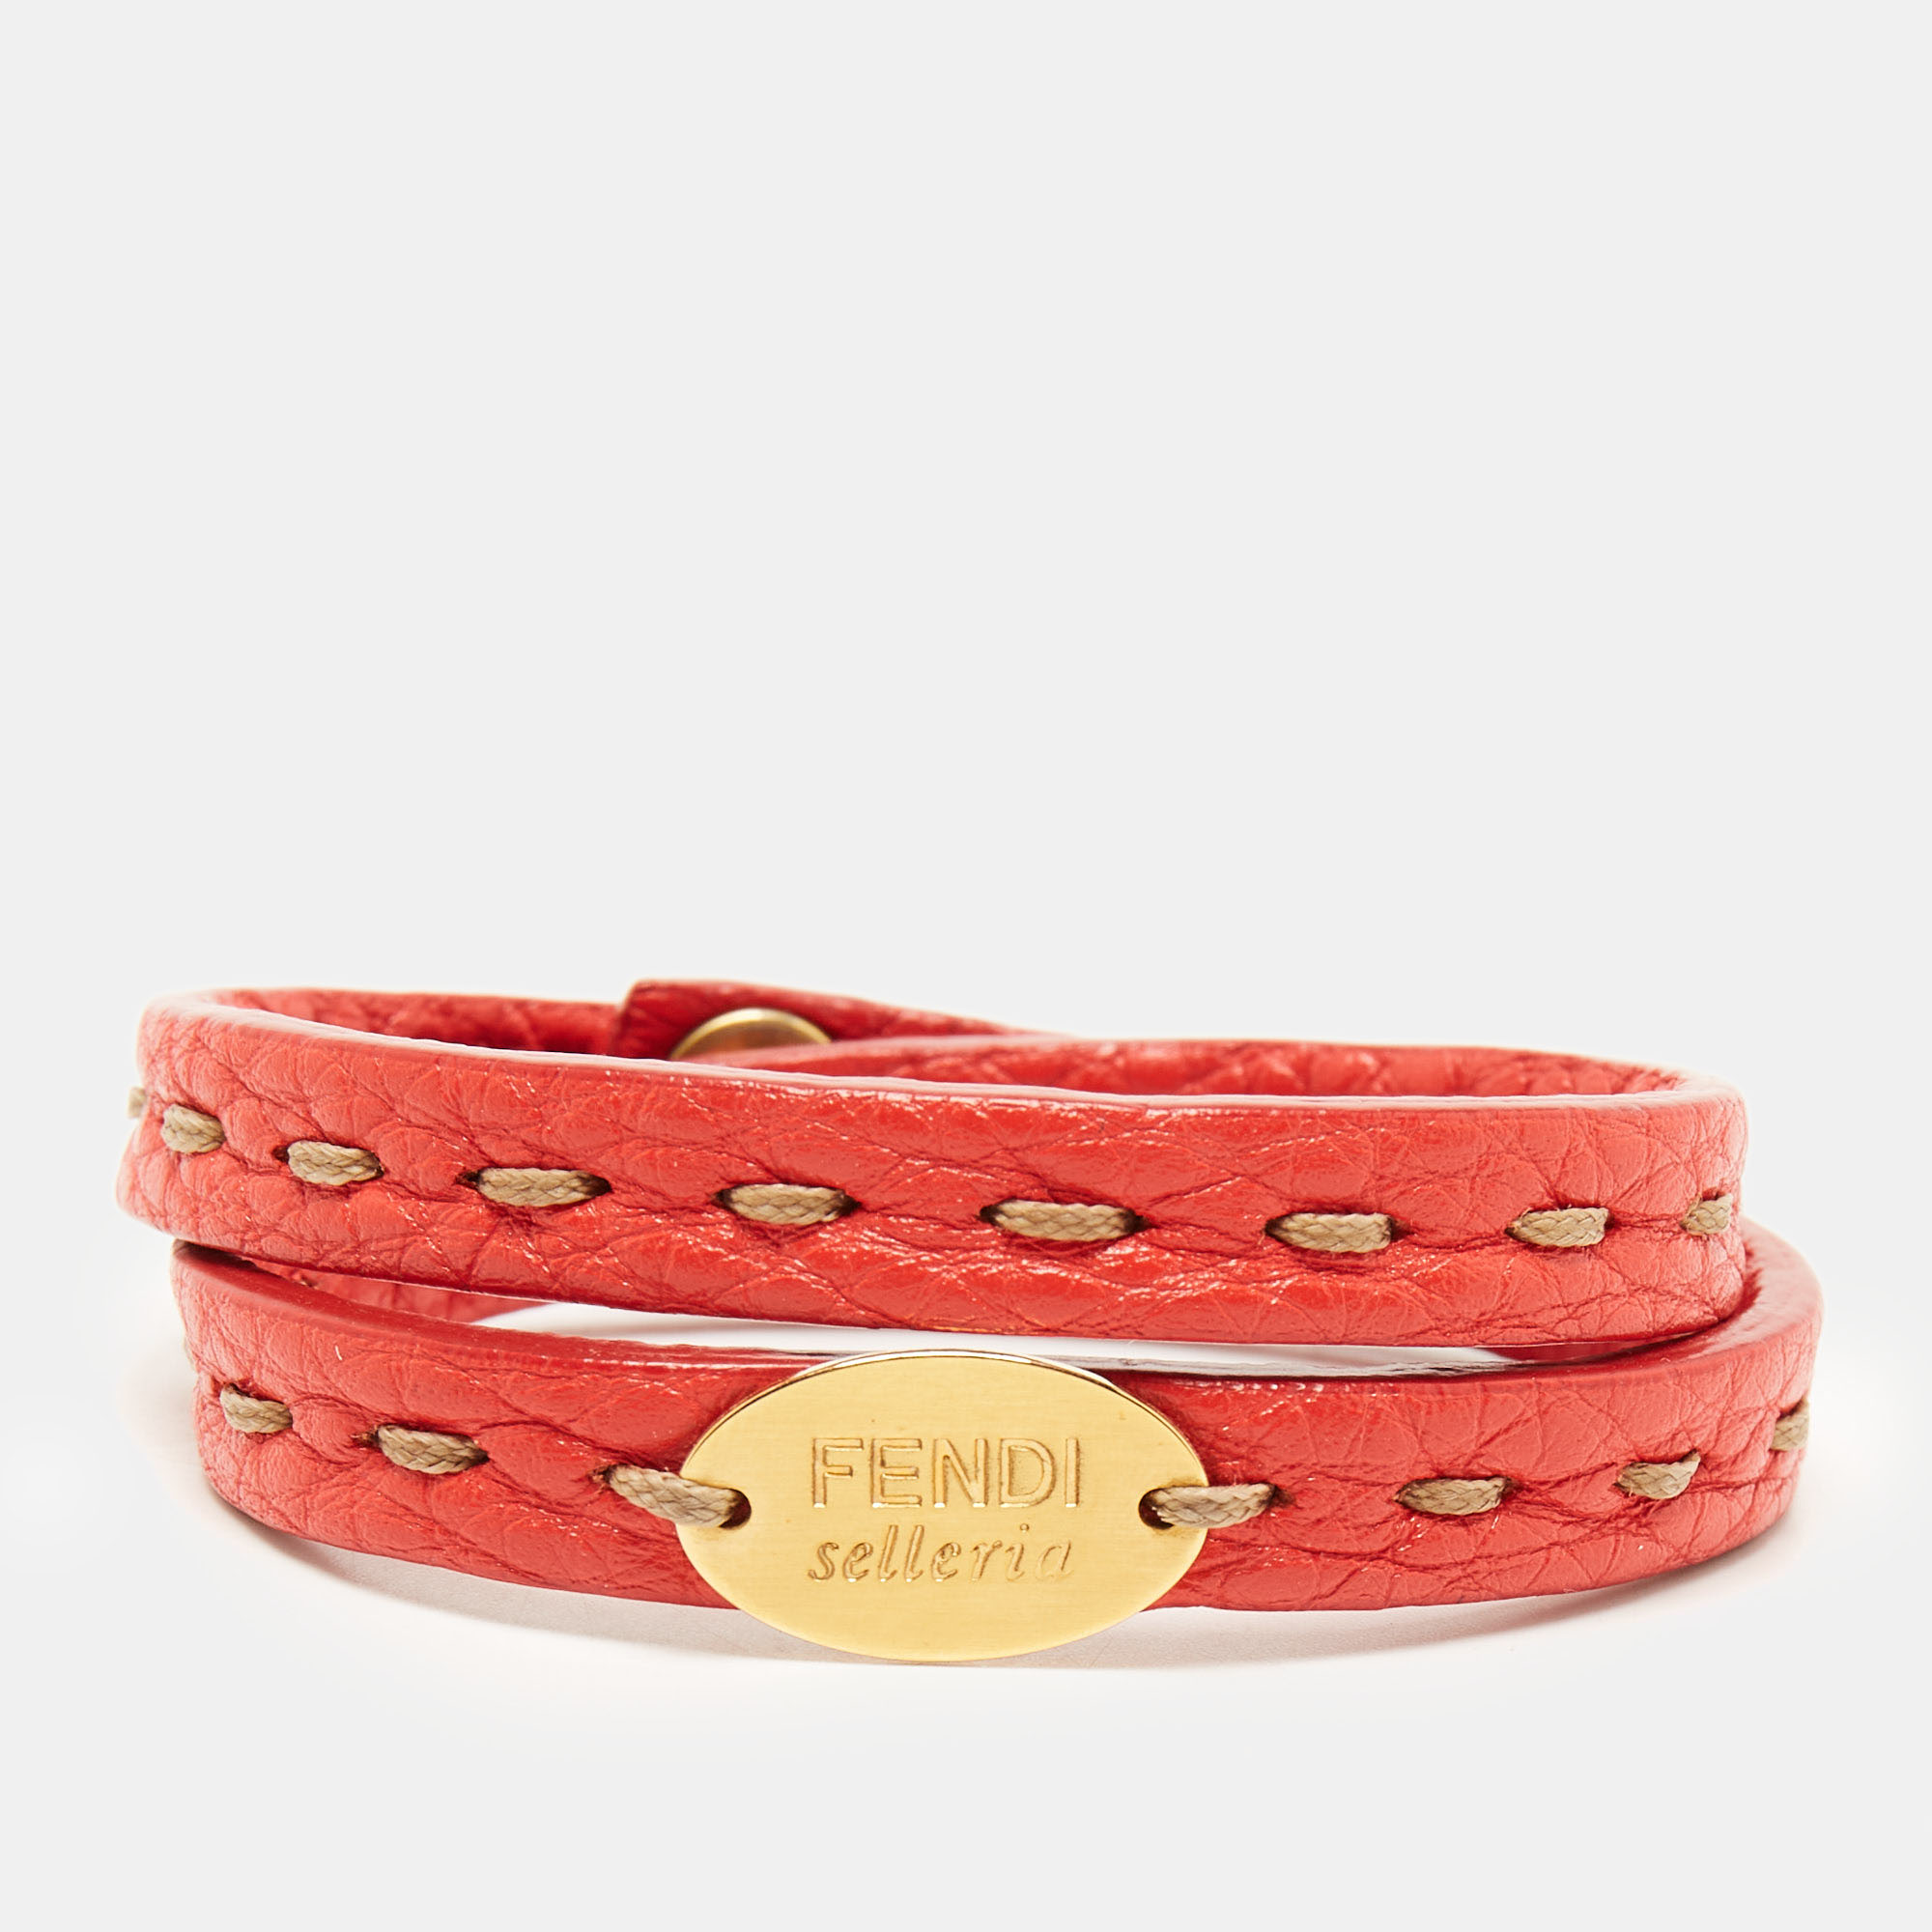 Fendi Sellaria Leather Gold Tone Wrap Bracelet